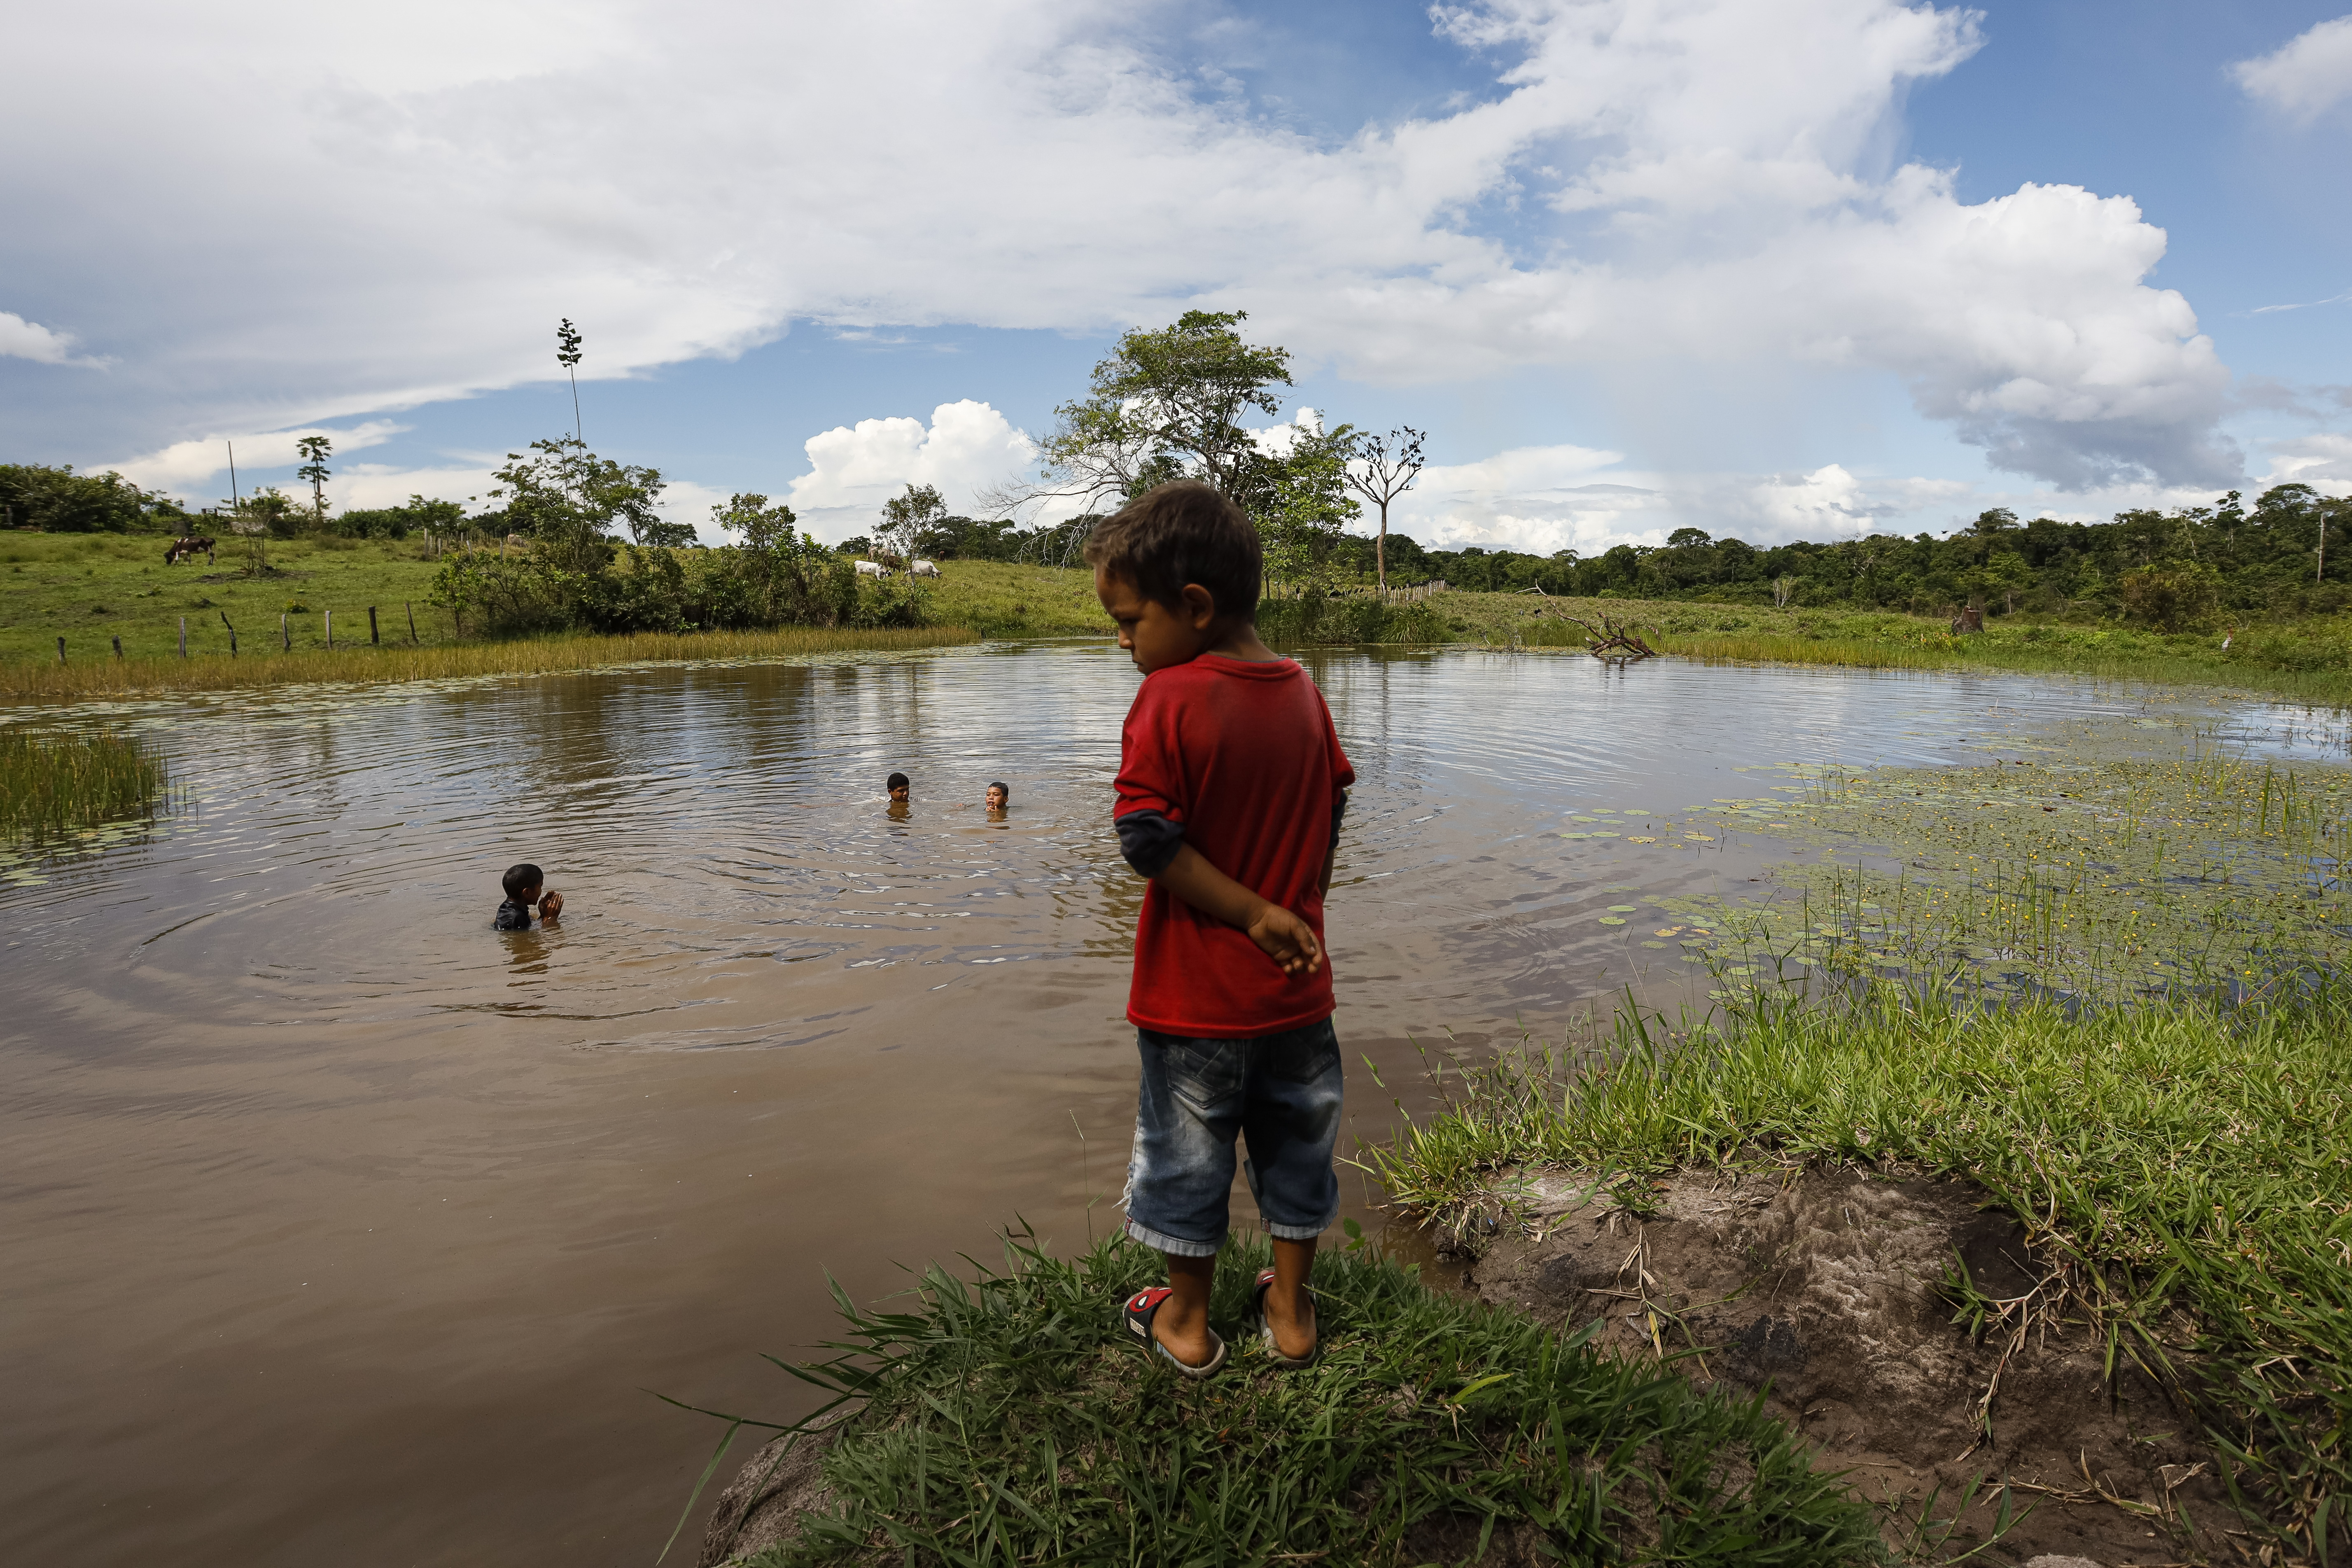 Mejorar la calidad del agua, el clamor de las comunidades en Bolívar